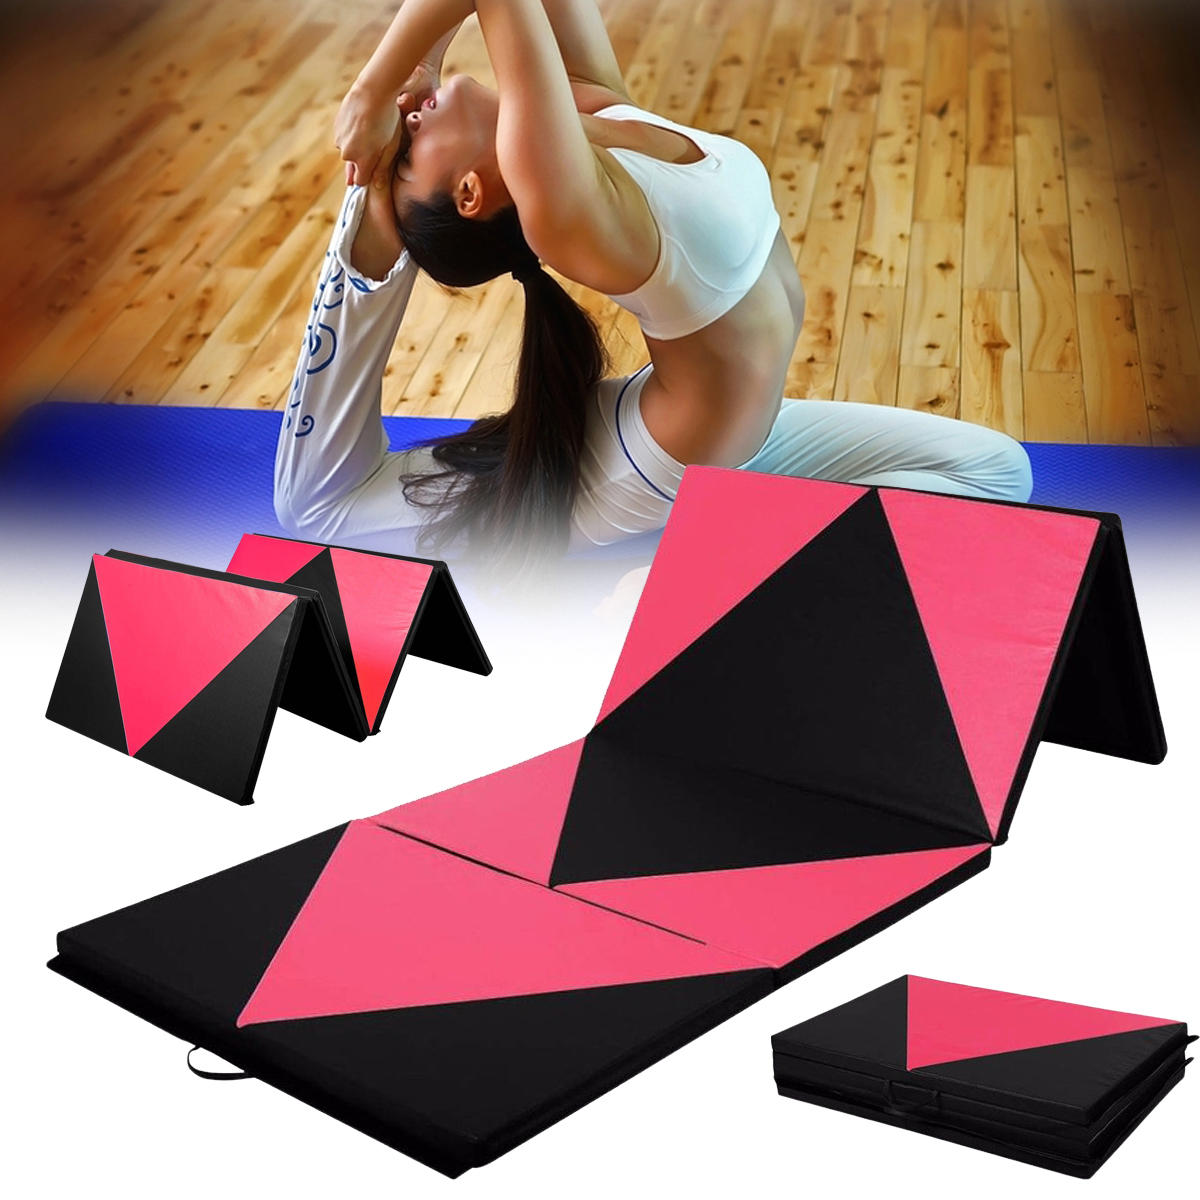 70x47x1.97inch Foldable体操マットジム運動Yogaパッドタンブリングフィットネスパネル